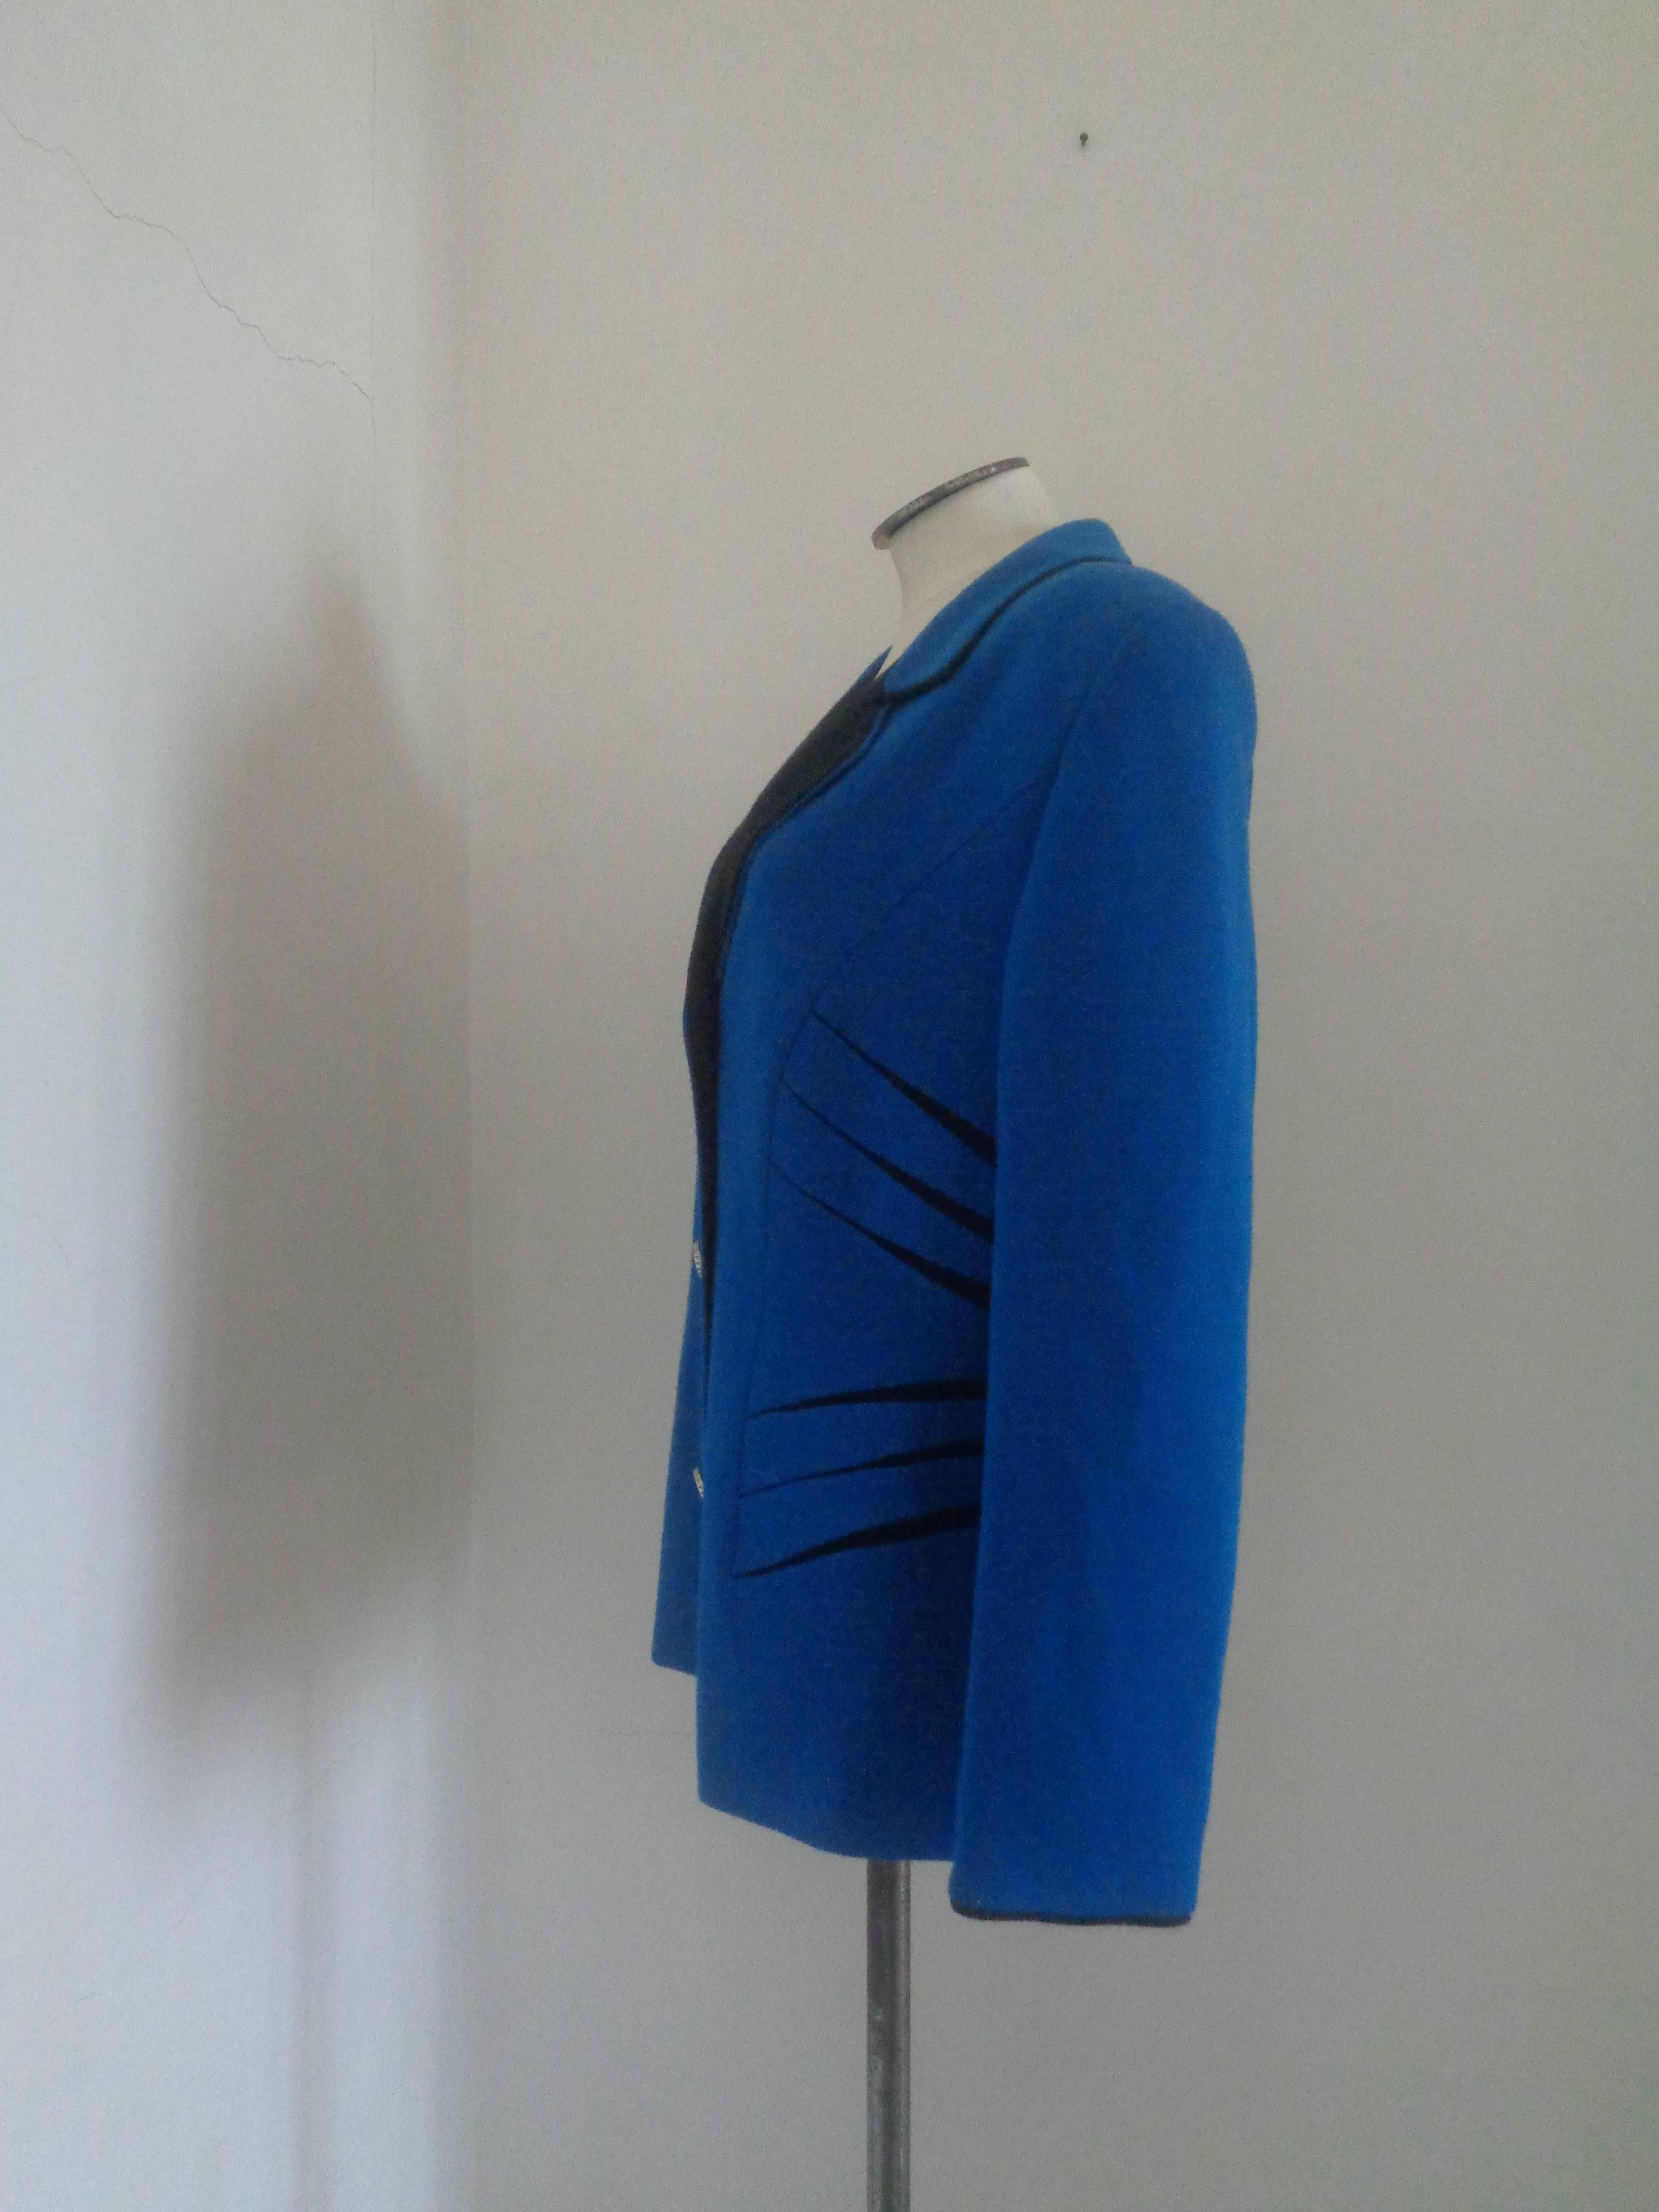 Pierre Cardin Jacke aus blauer und schwarzer Wolle

Vollständig in Italien hergestellt in Größe 46

